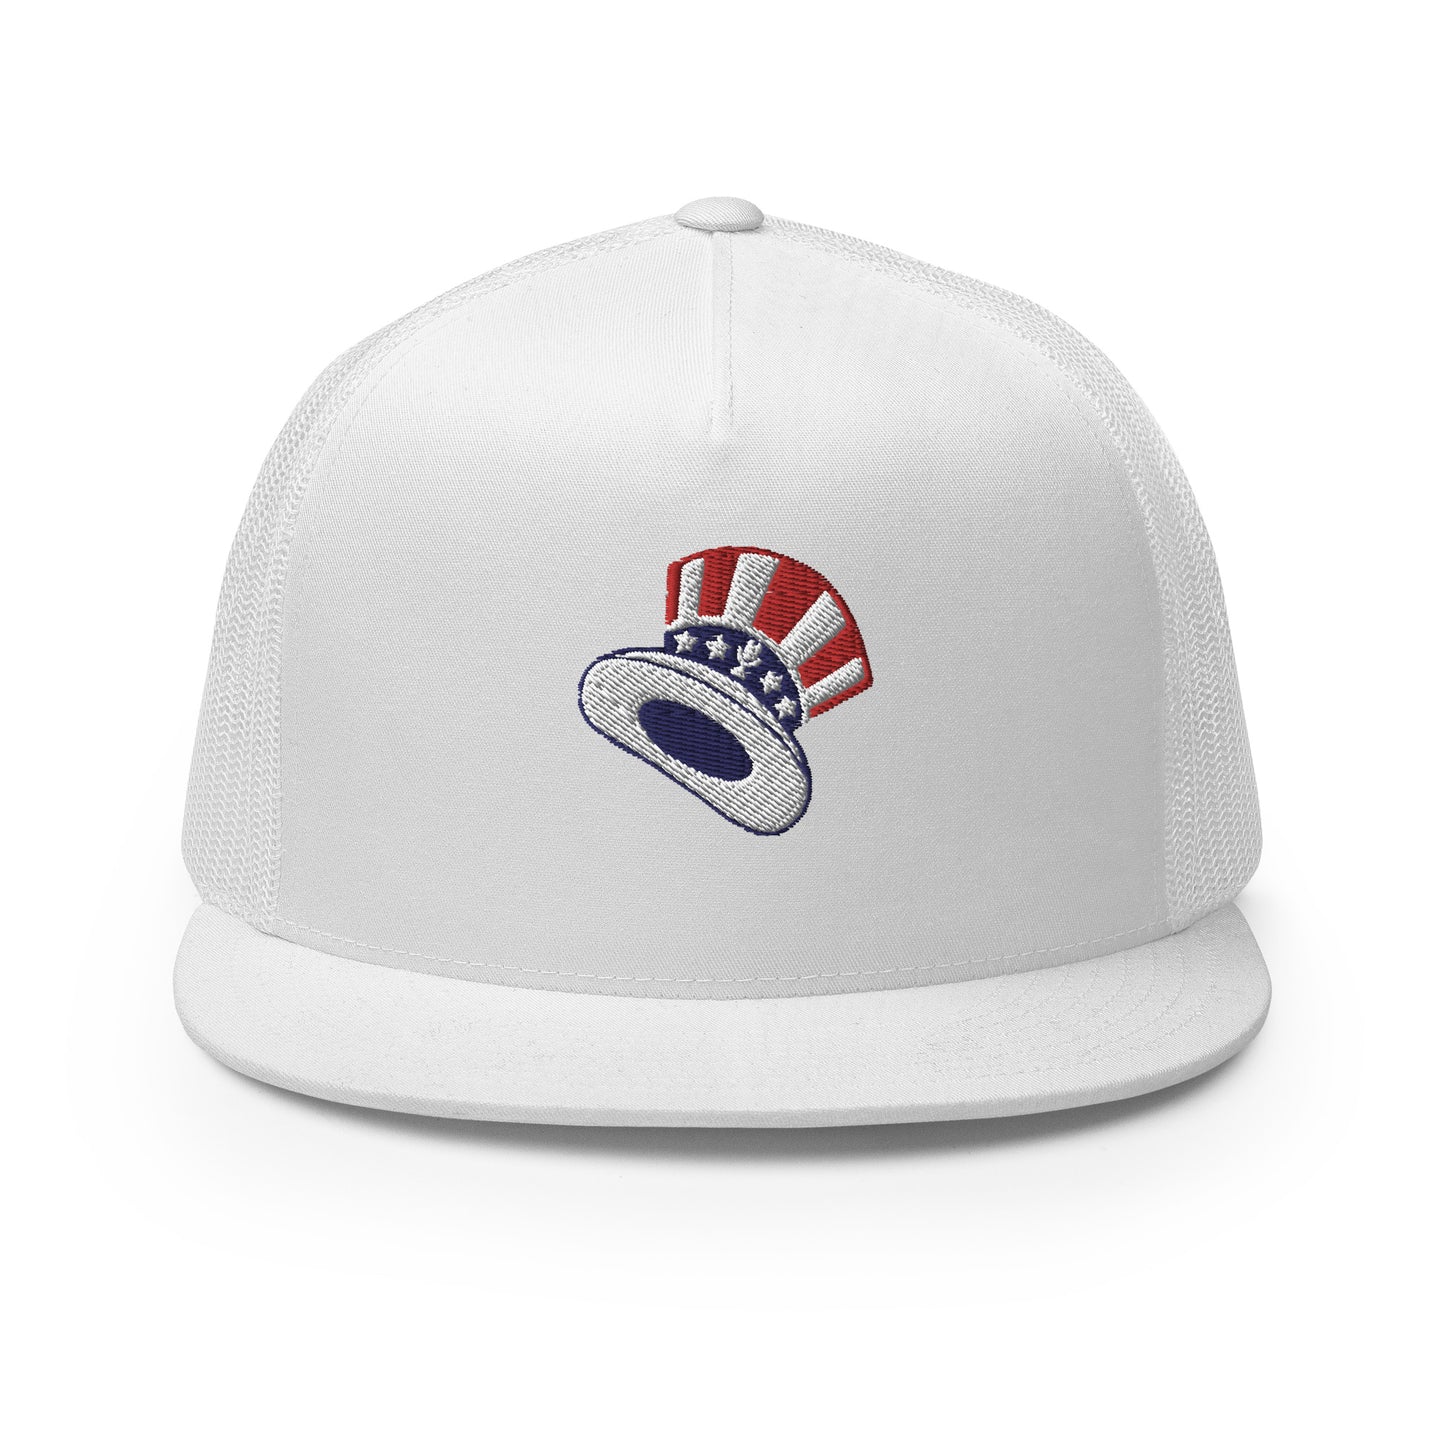 Fun Hat / Top Hat Trucker Cap